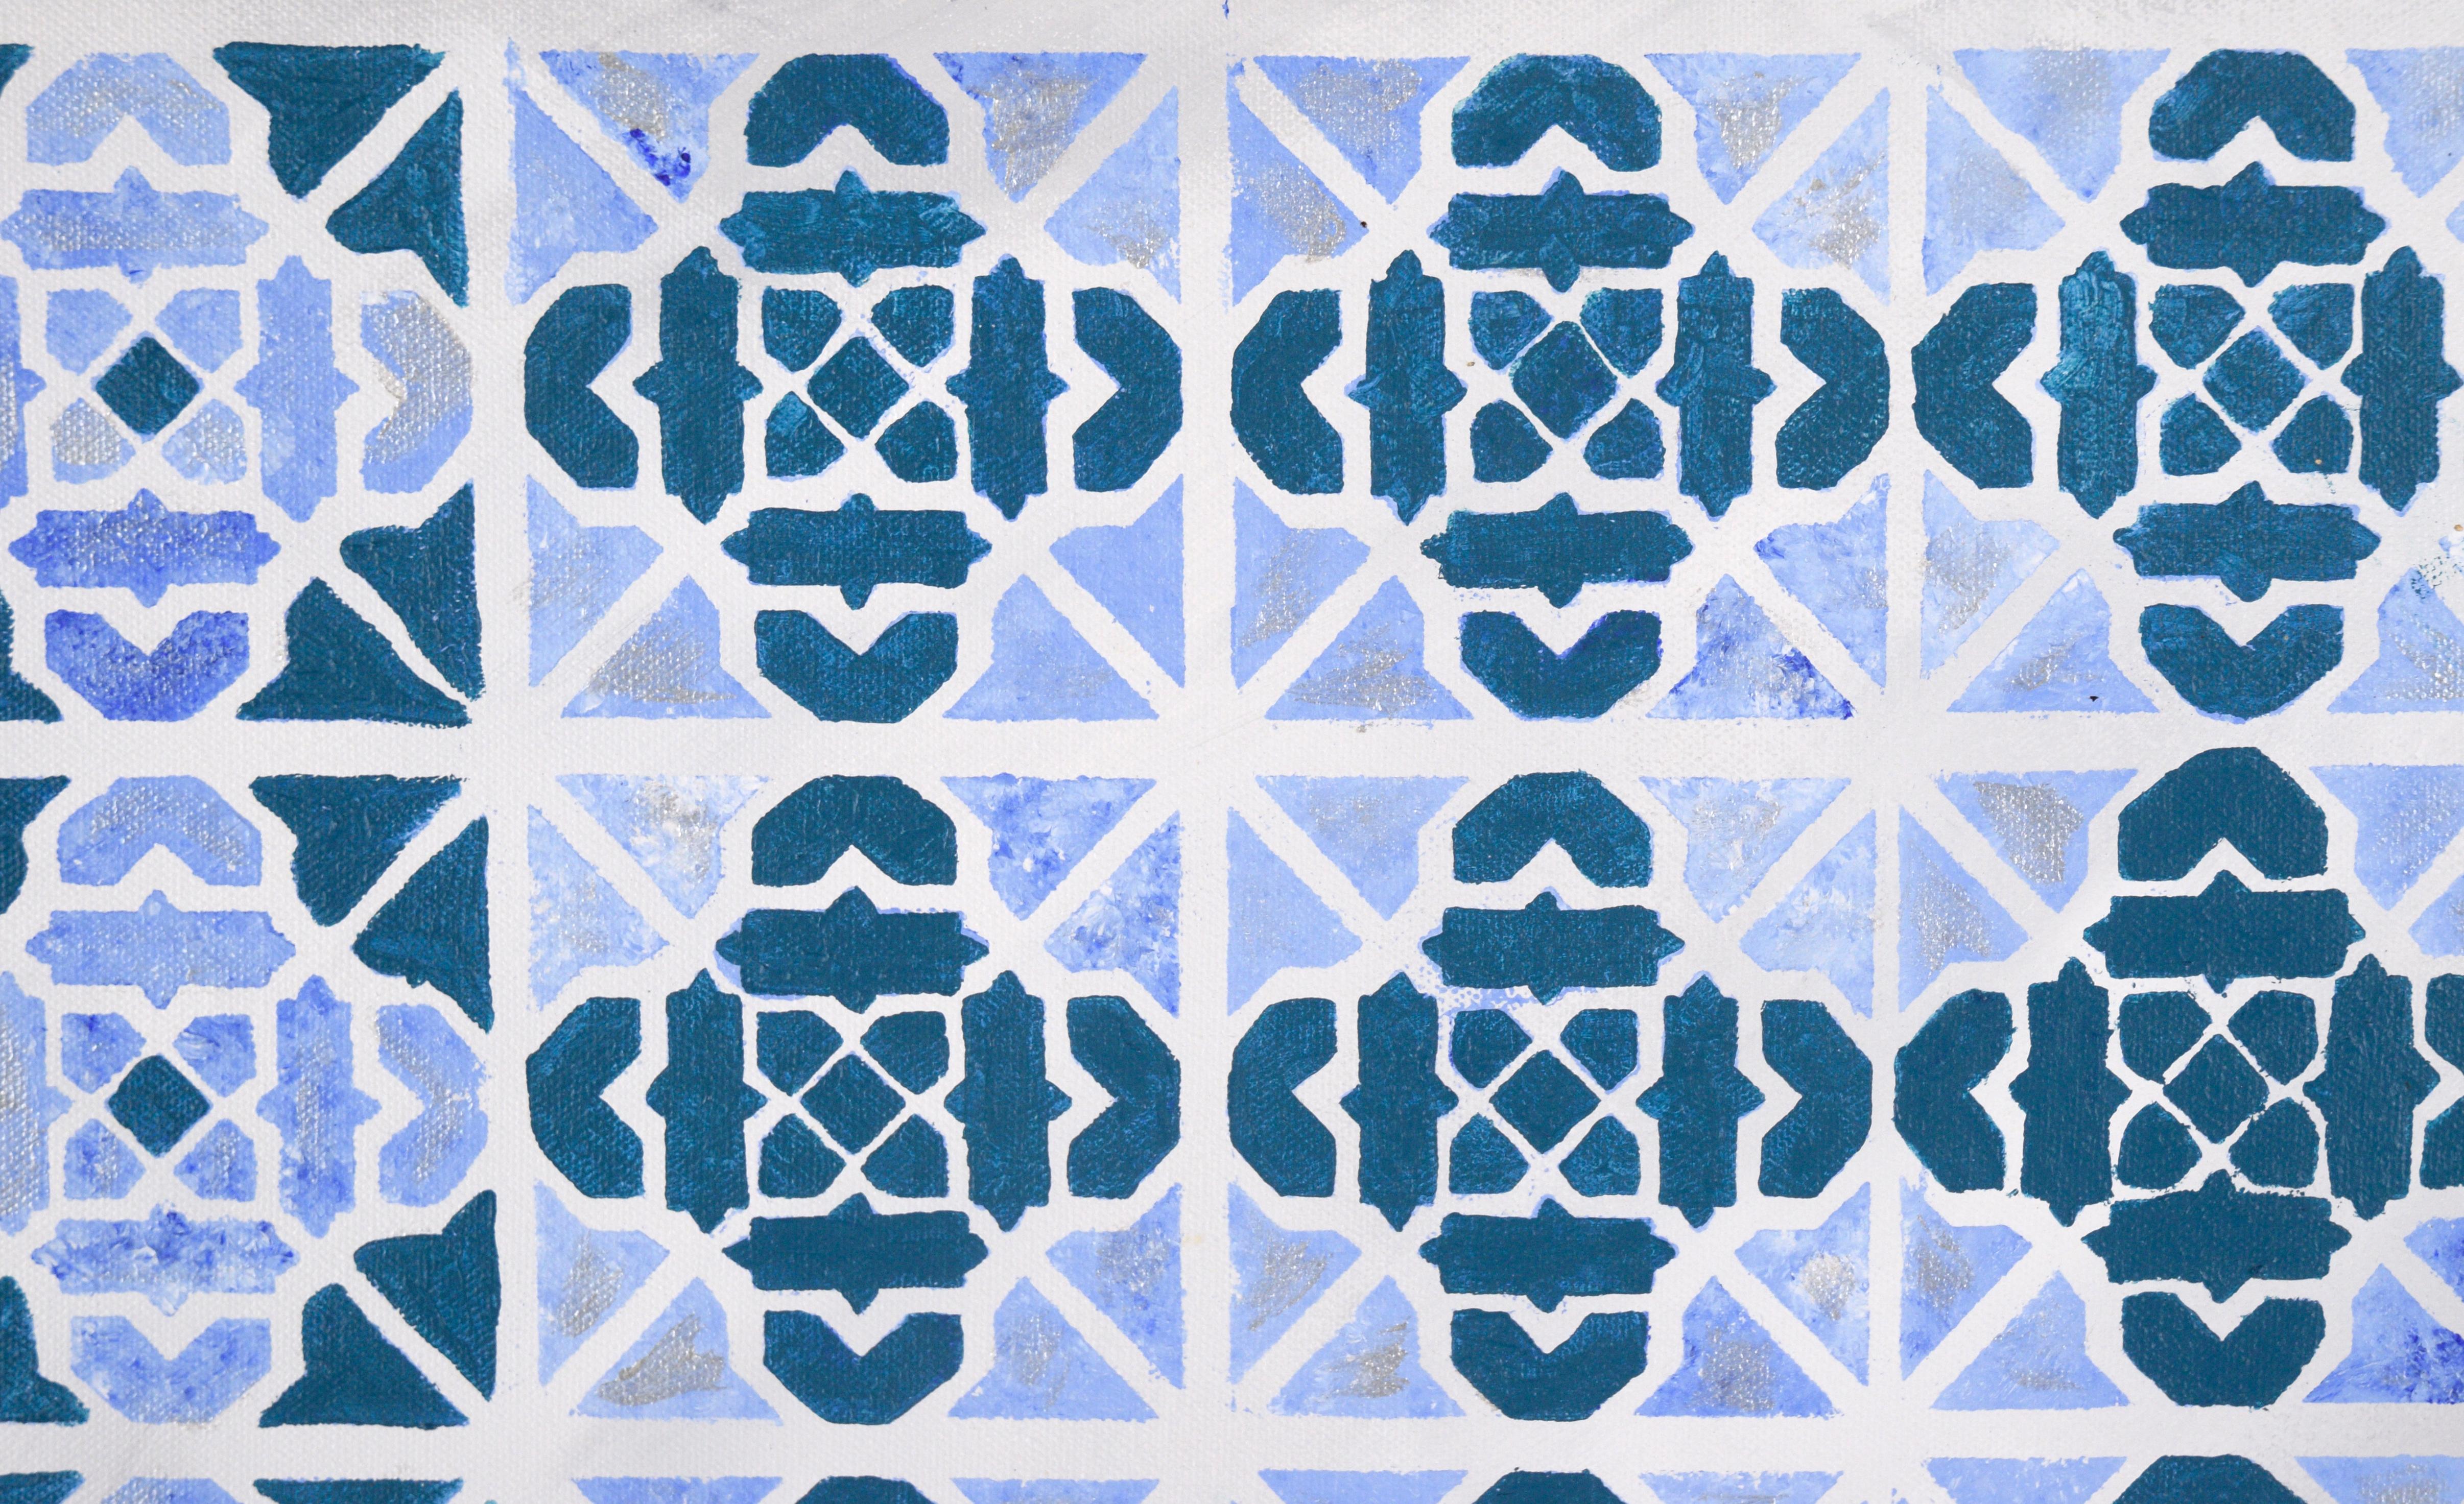 Abstraktes geometrisches Kachelmuster Op-Art in Blau und Silber - Acryl auf Leinwand

Geometrische Op Art in Blau und Silber von einem unbekannten Künstler. Es gibt vier verschiedene Variationen eines geometrischen Musters, wie man es auch auf